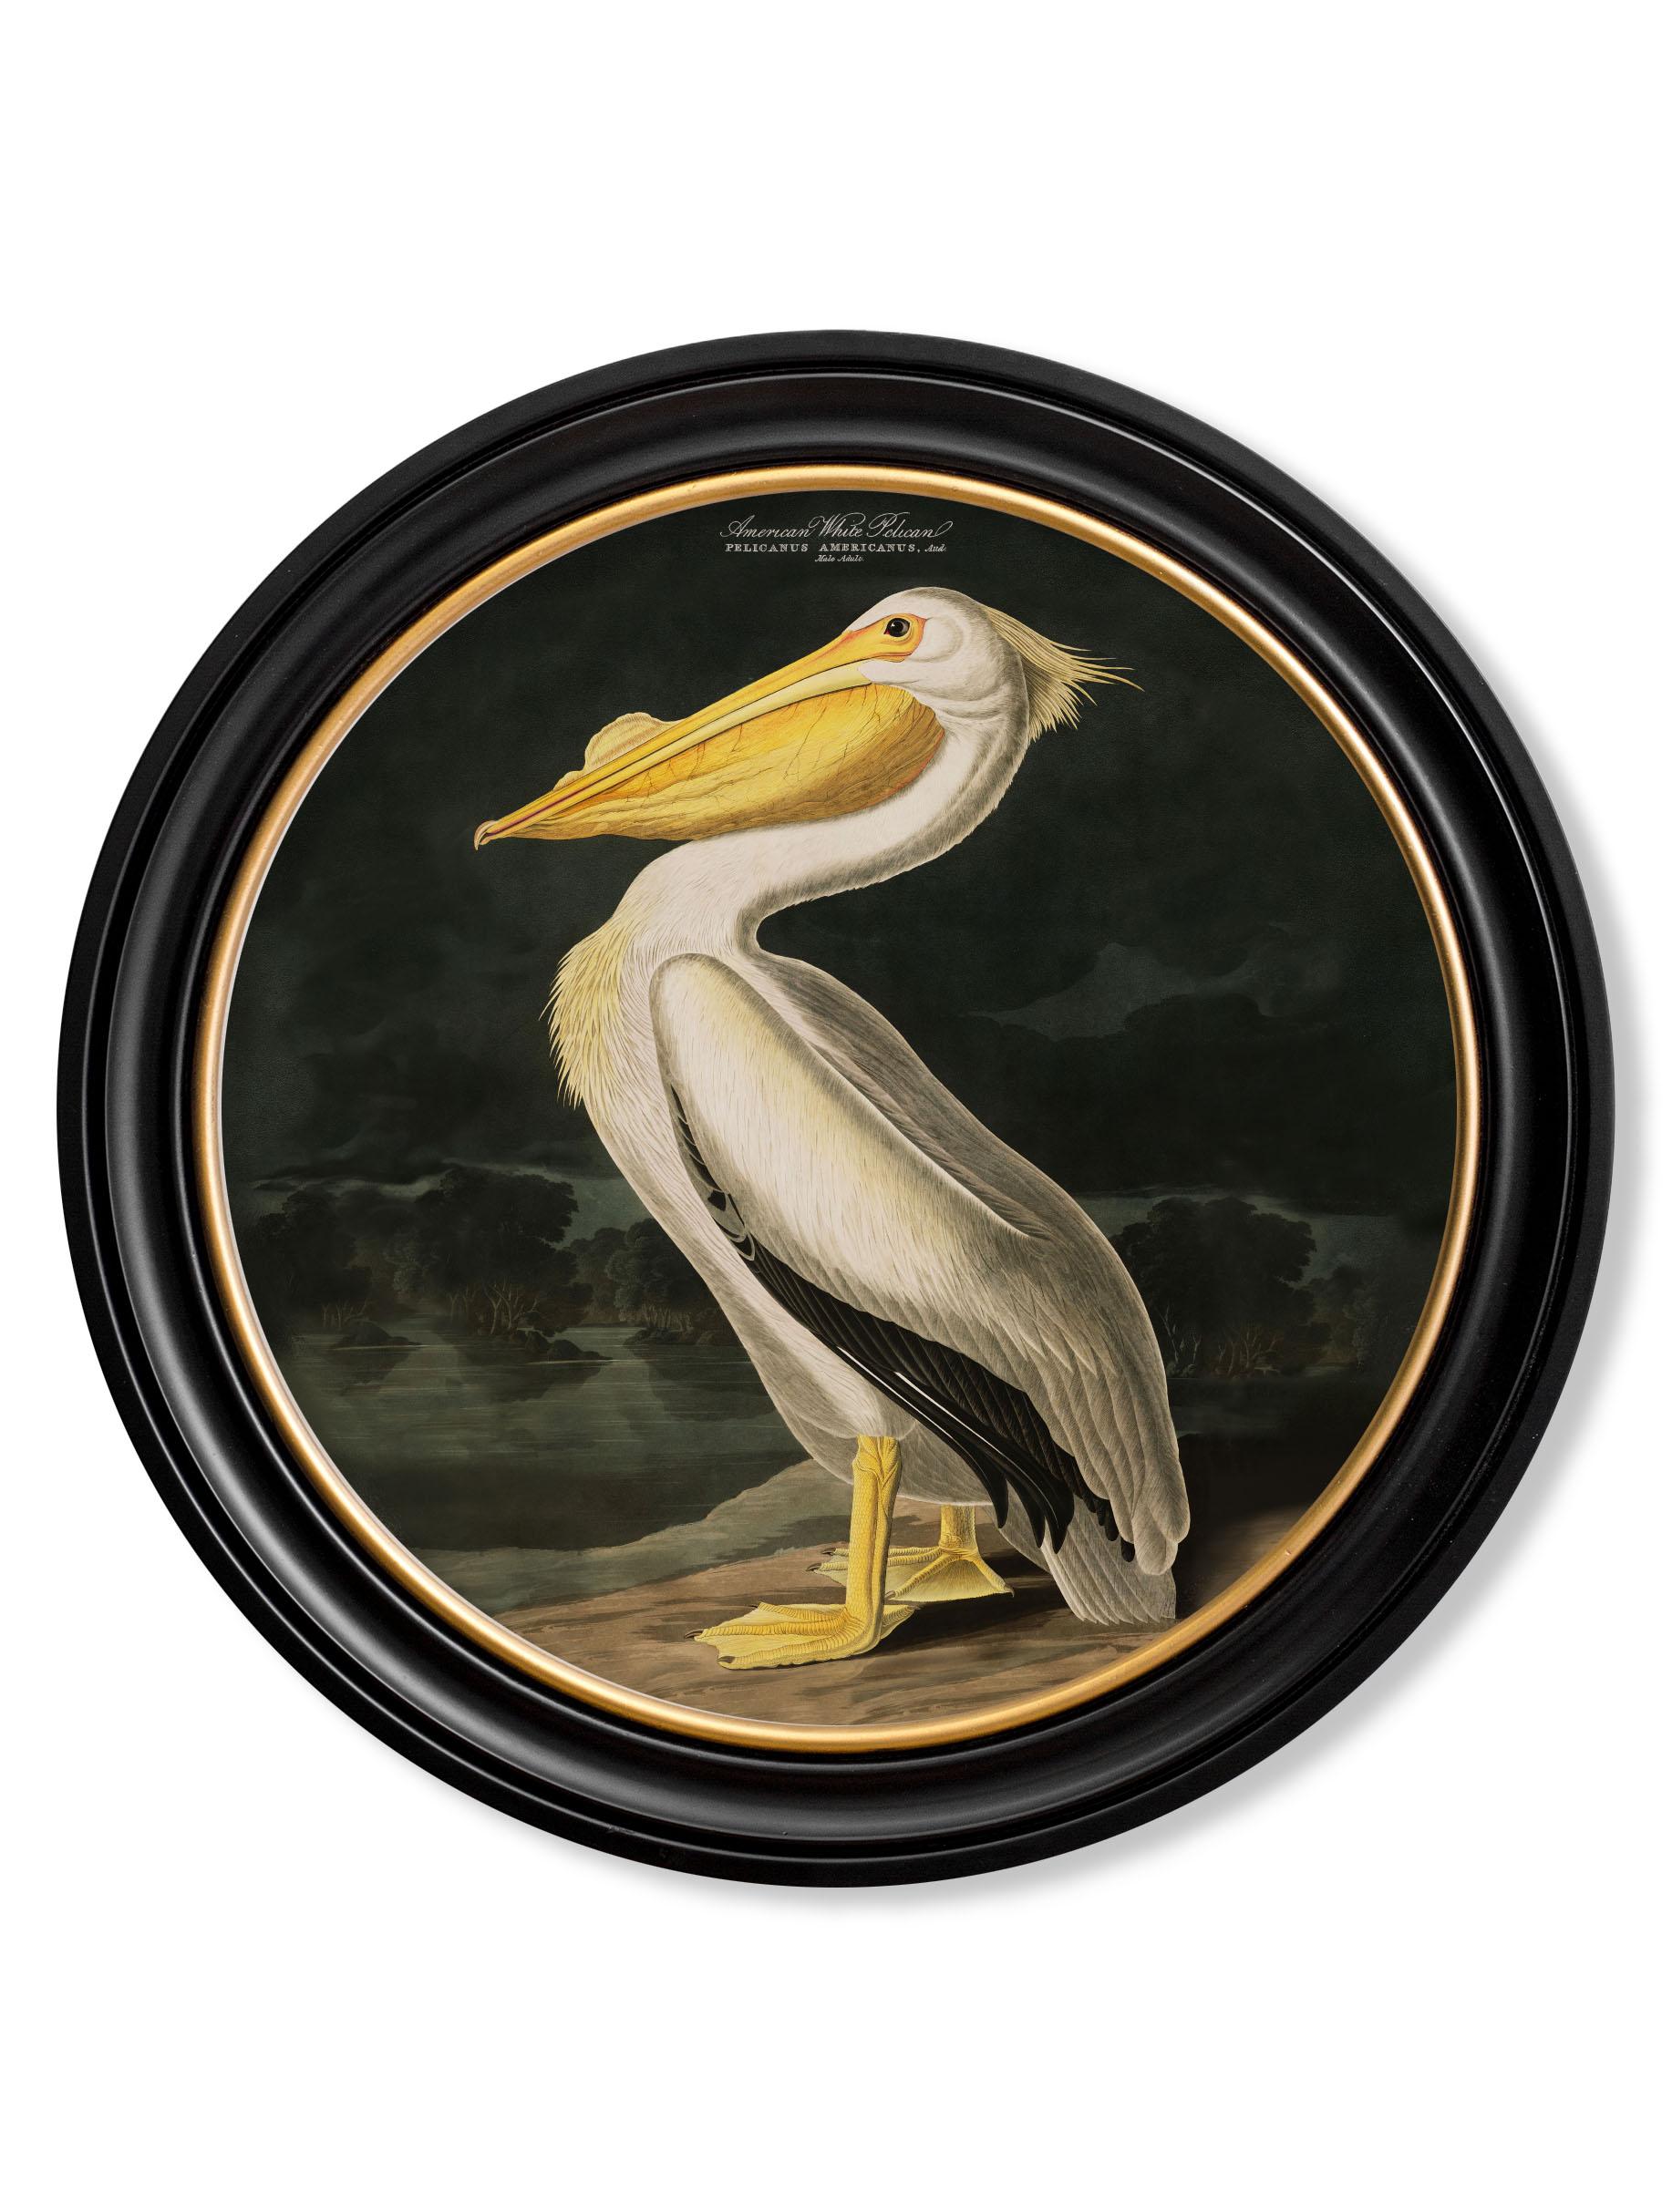 Il s'agit d'une impression numériquement remasterisée du Pélican blanc d'Amérique référencée à partir d'une impression colorée à la main des Oiseaux d'Amérique d'Audubon, datant des années 1800.

Le pélican blanc d'Amérique est un grand oiseau